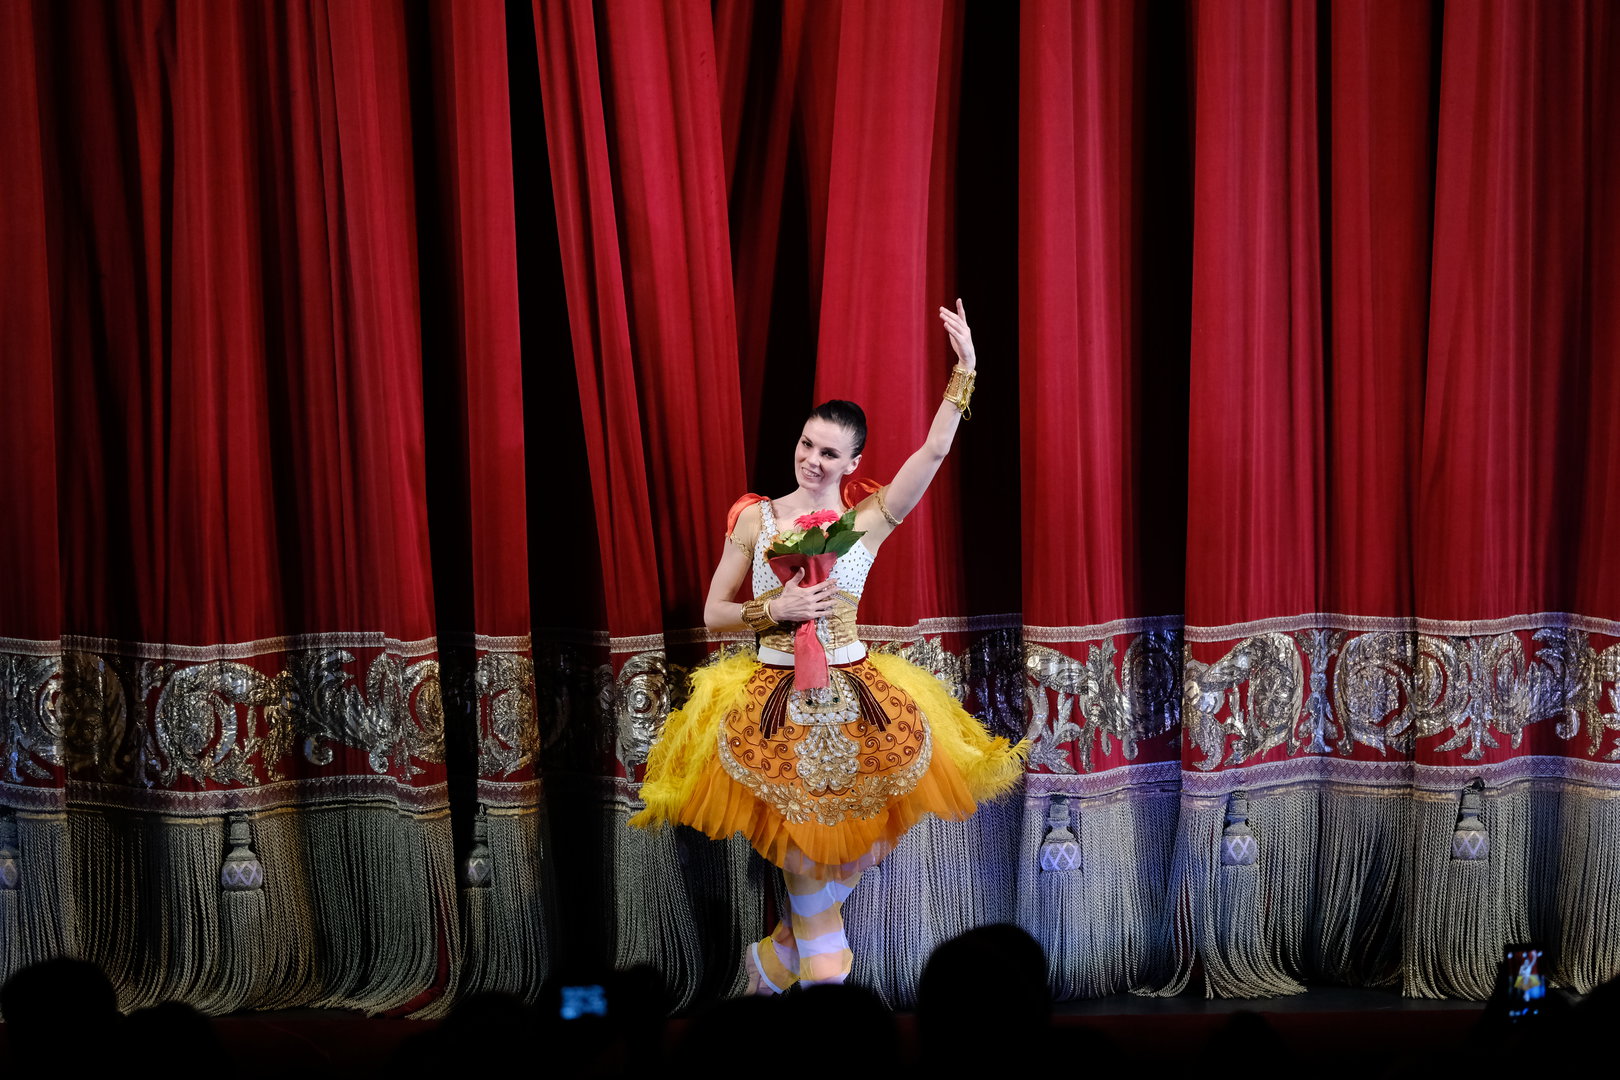 Звезда мирового балета Наталья Осипова подписала контракт с пермским оперным театром